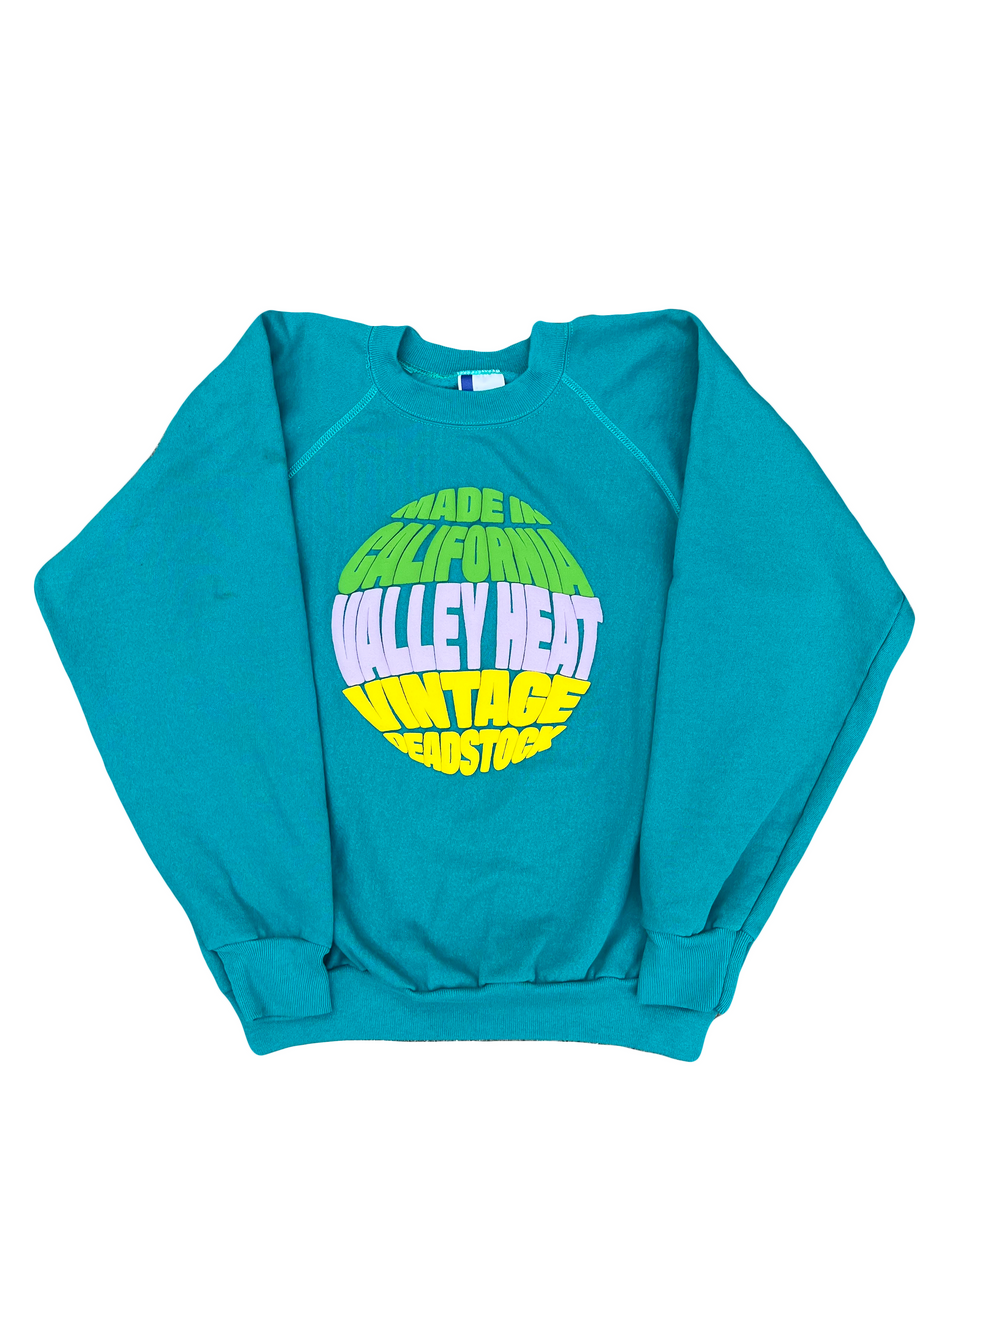 Teal Green Sweatshirt 010